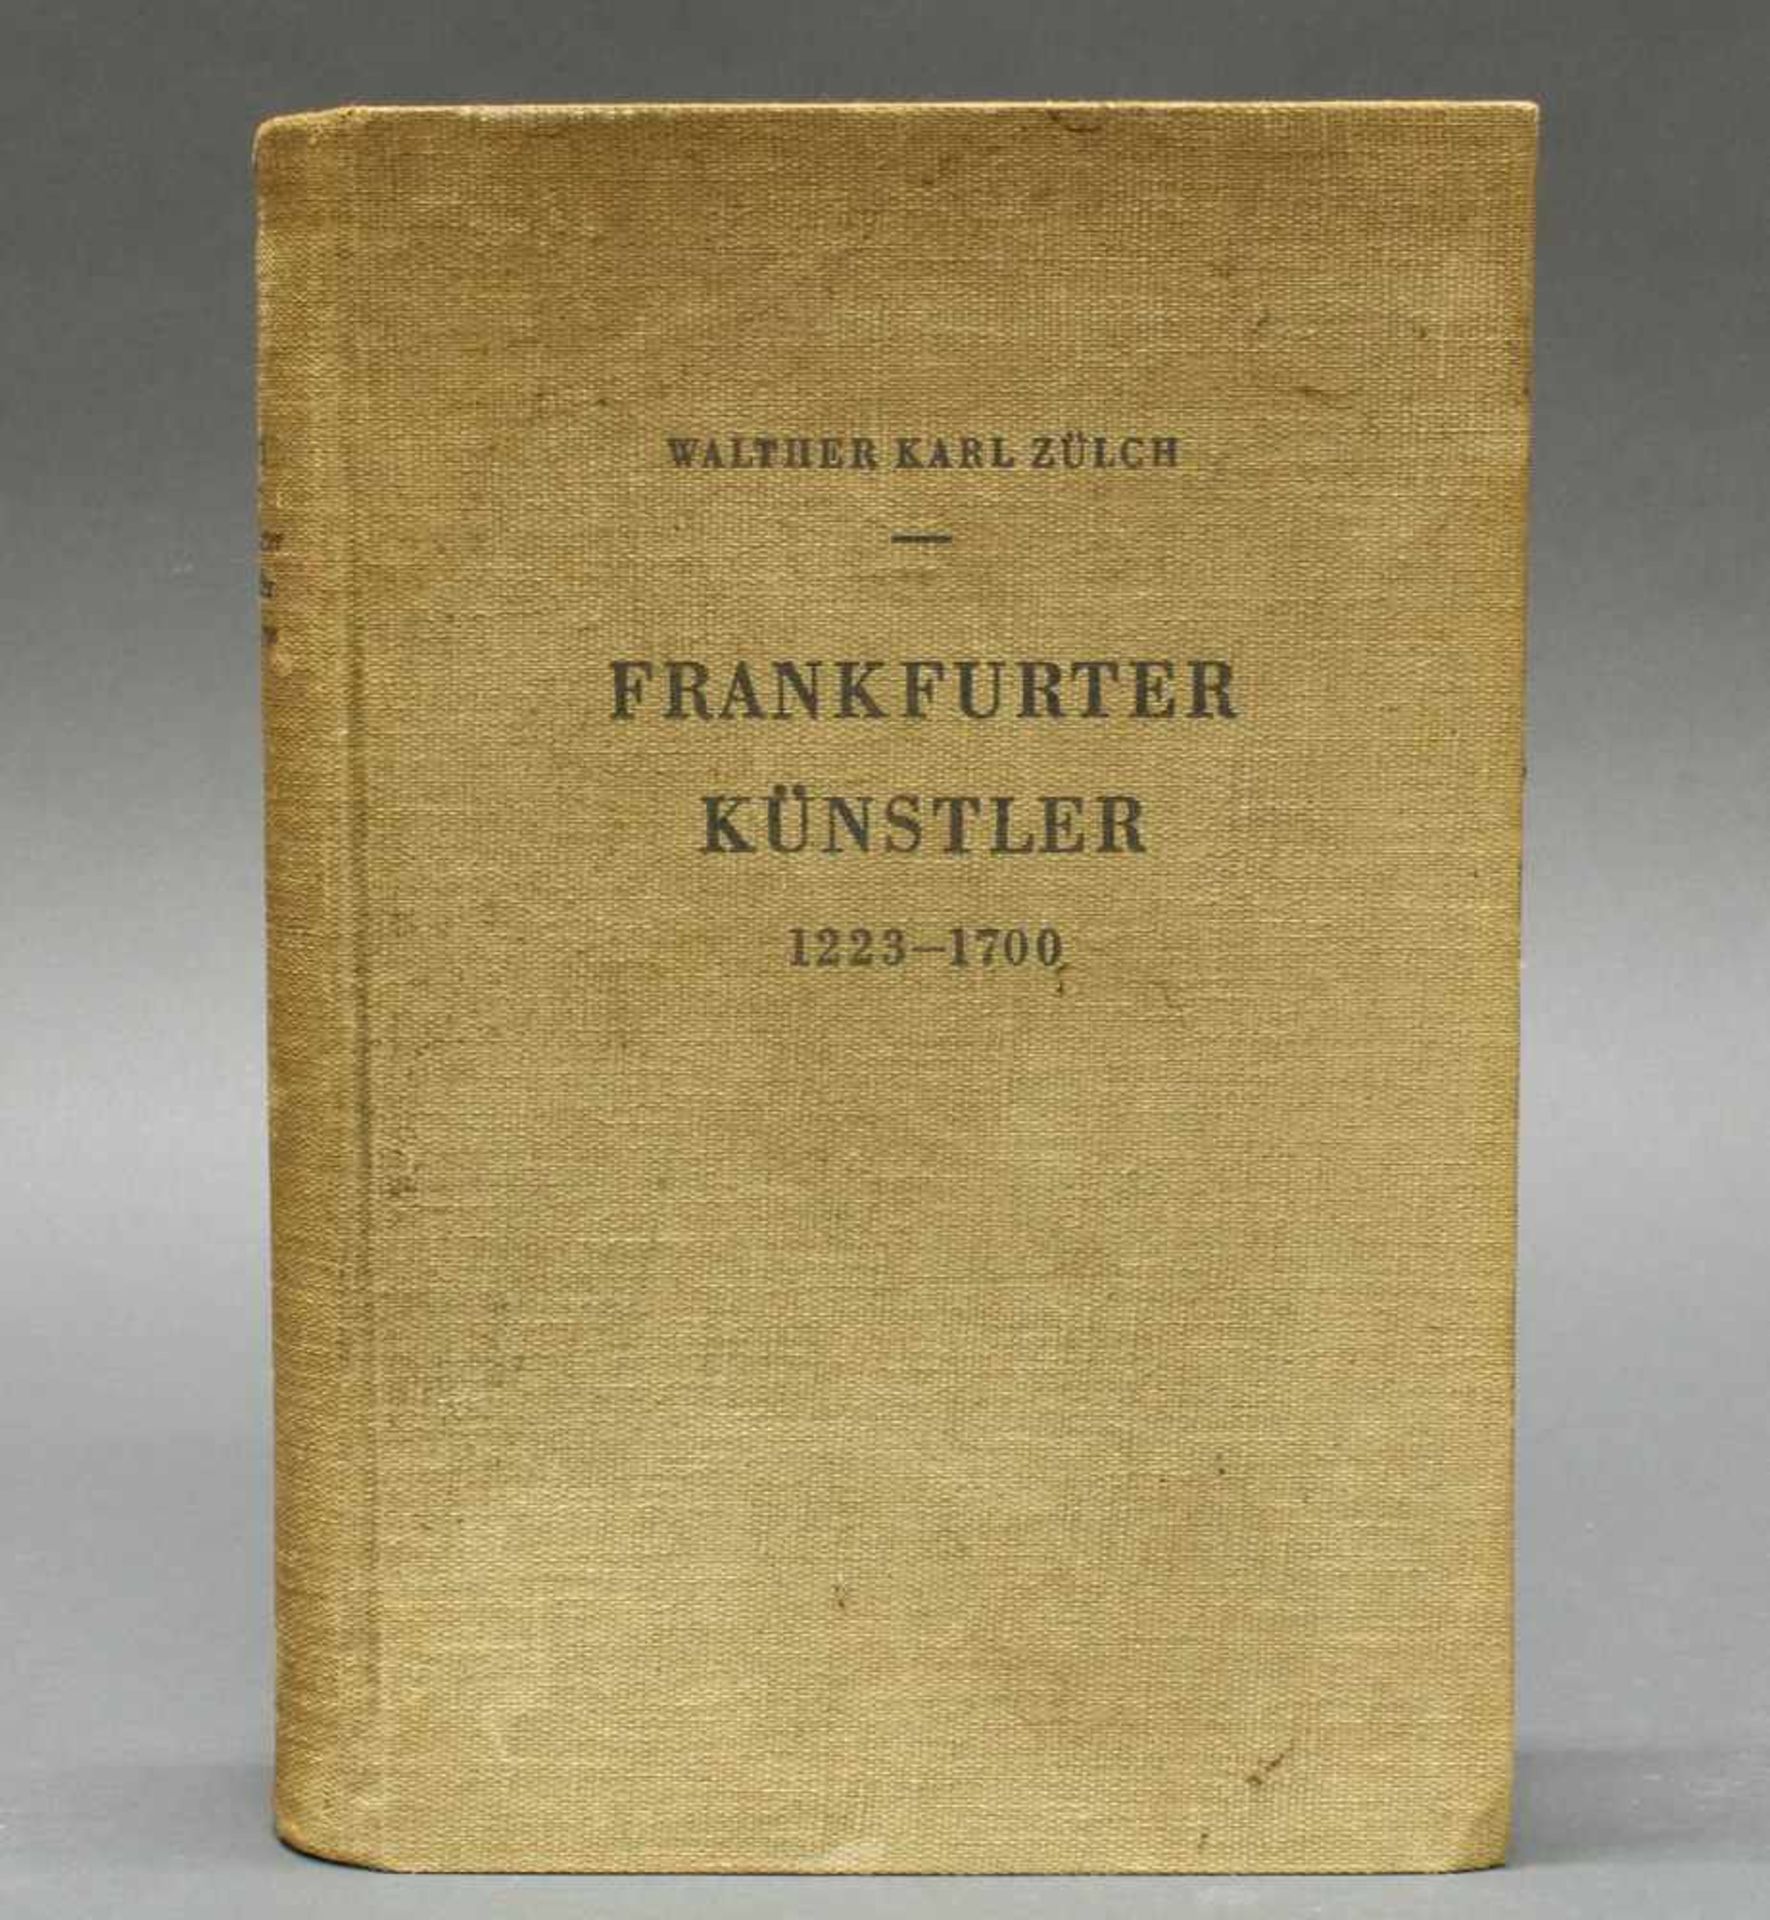 Walther Karl Zülch, "Frankfurter Künstler", 1223-1700, 1935, Leineneinband